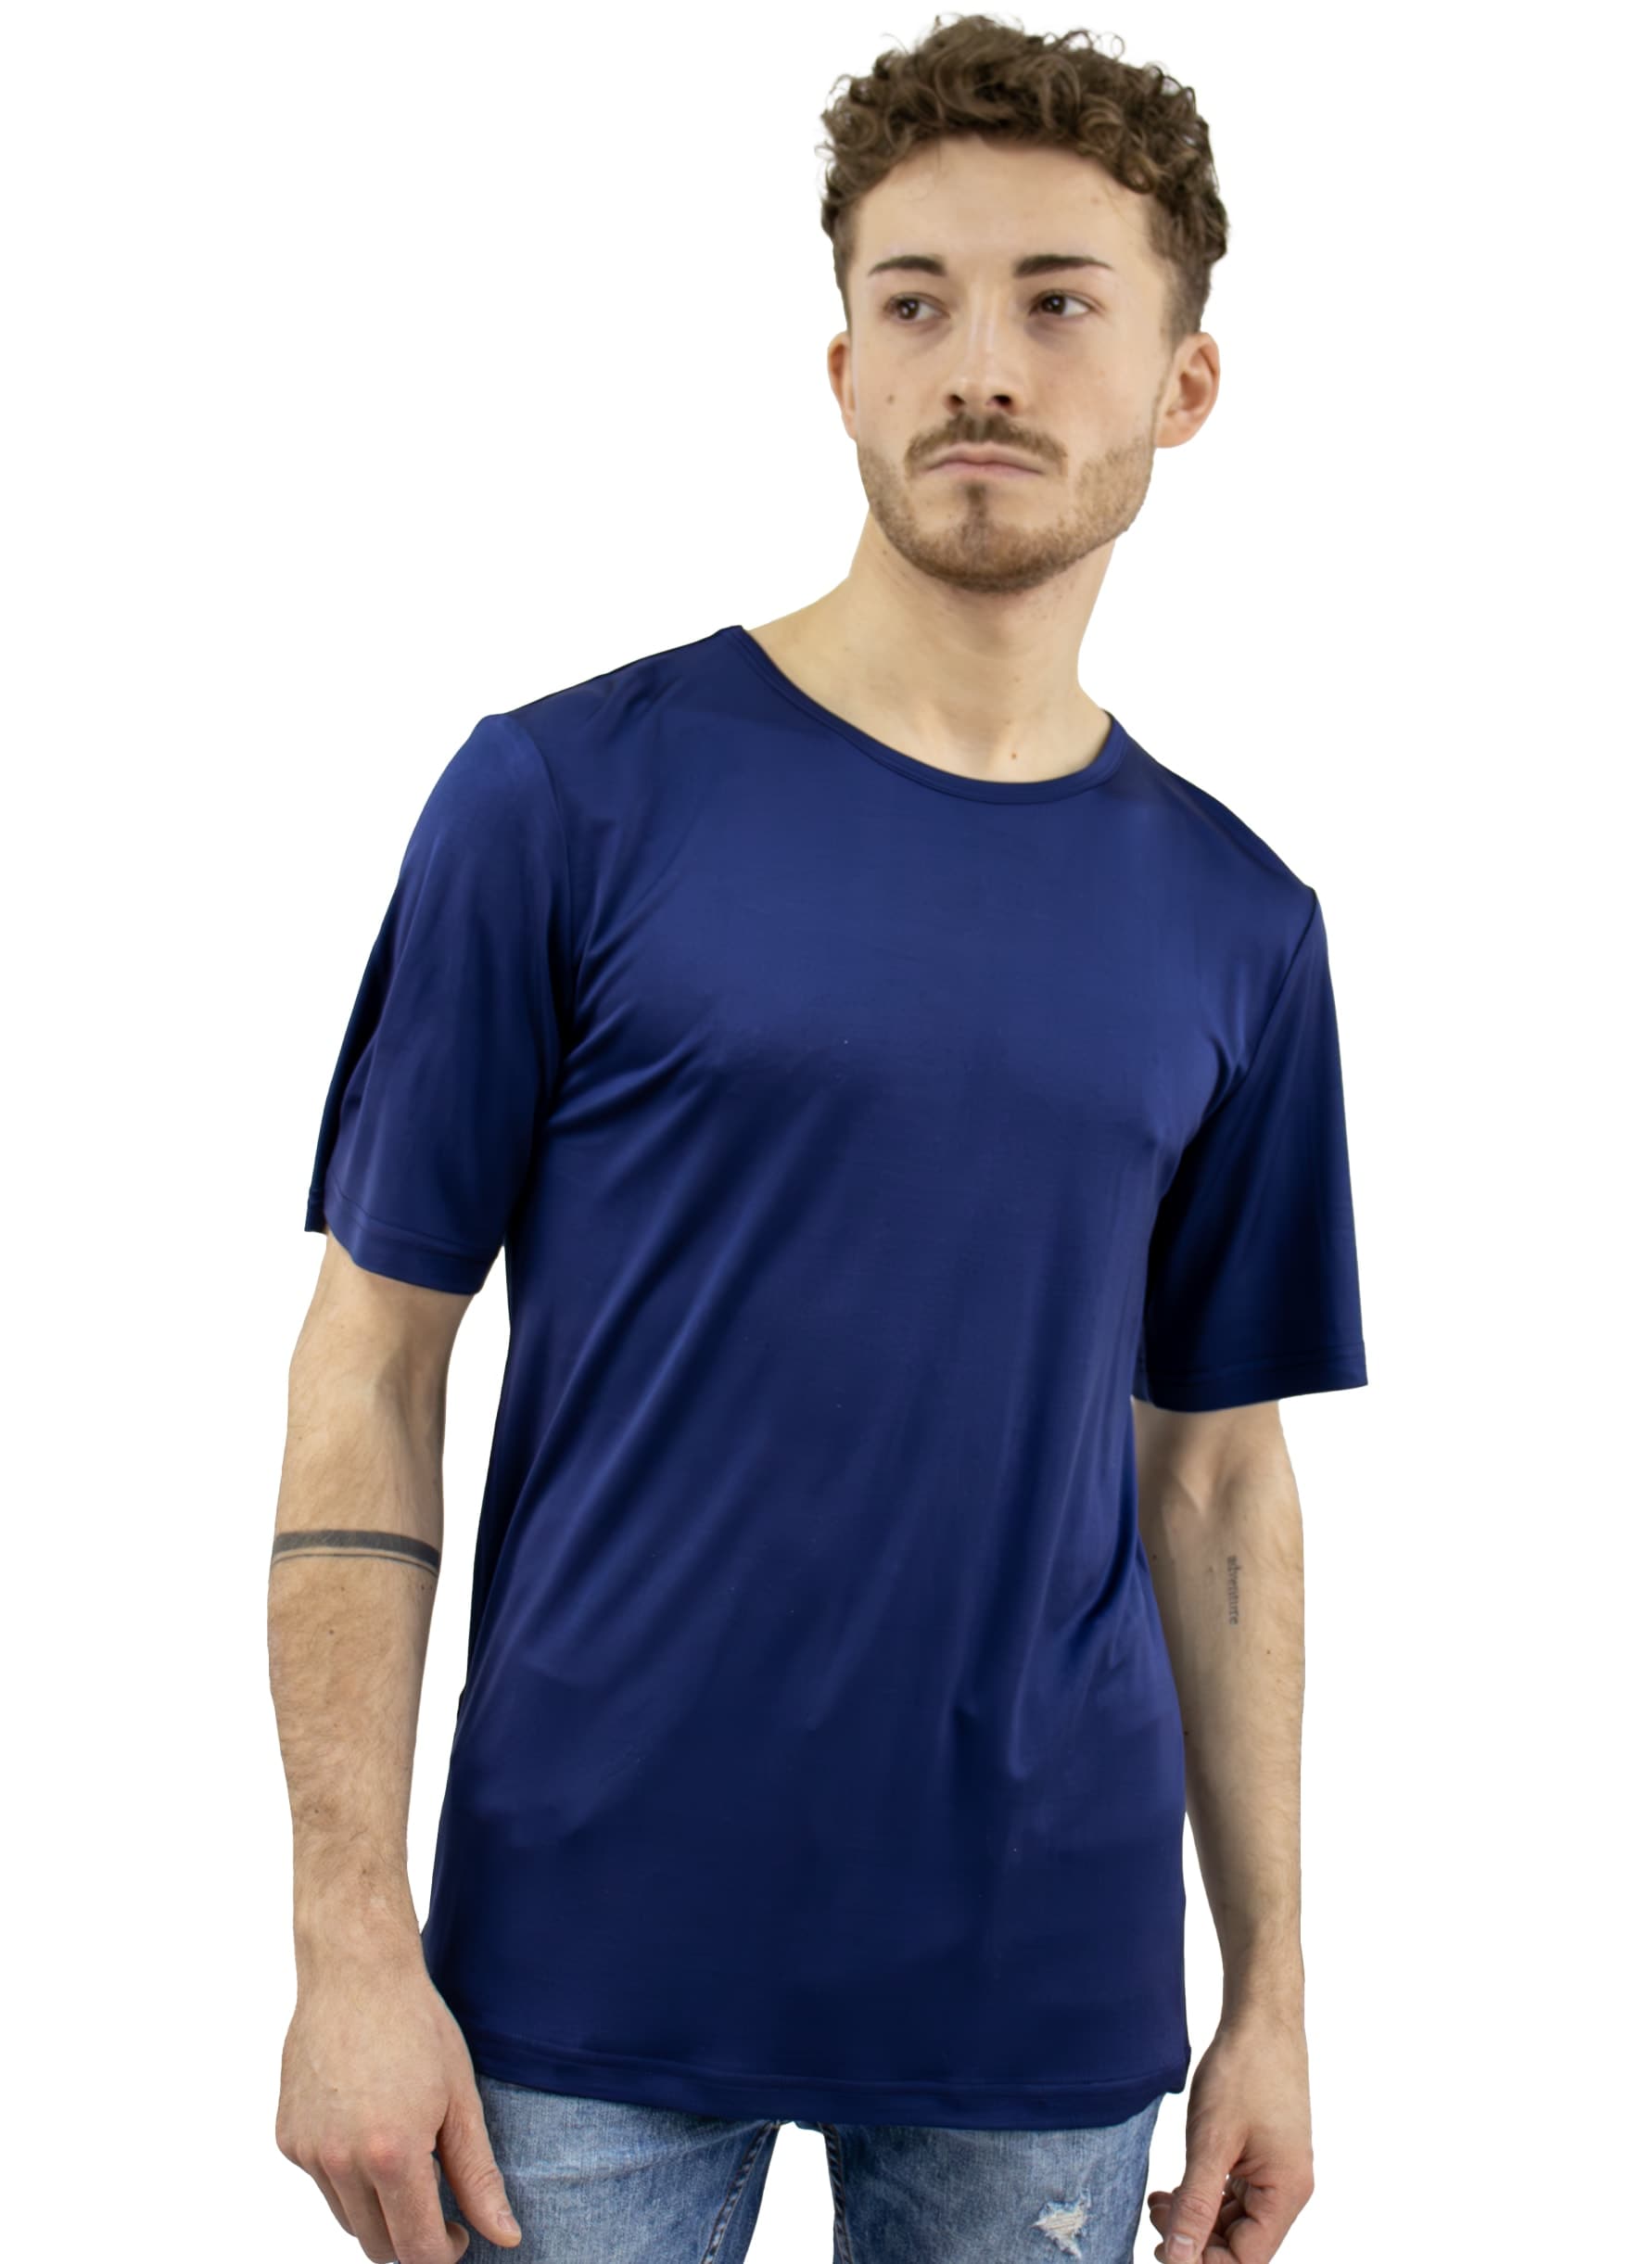 Unisex Silk T-Shirt, Navy Blue